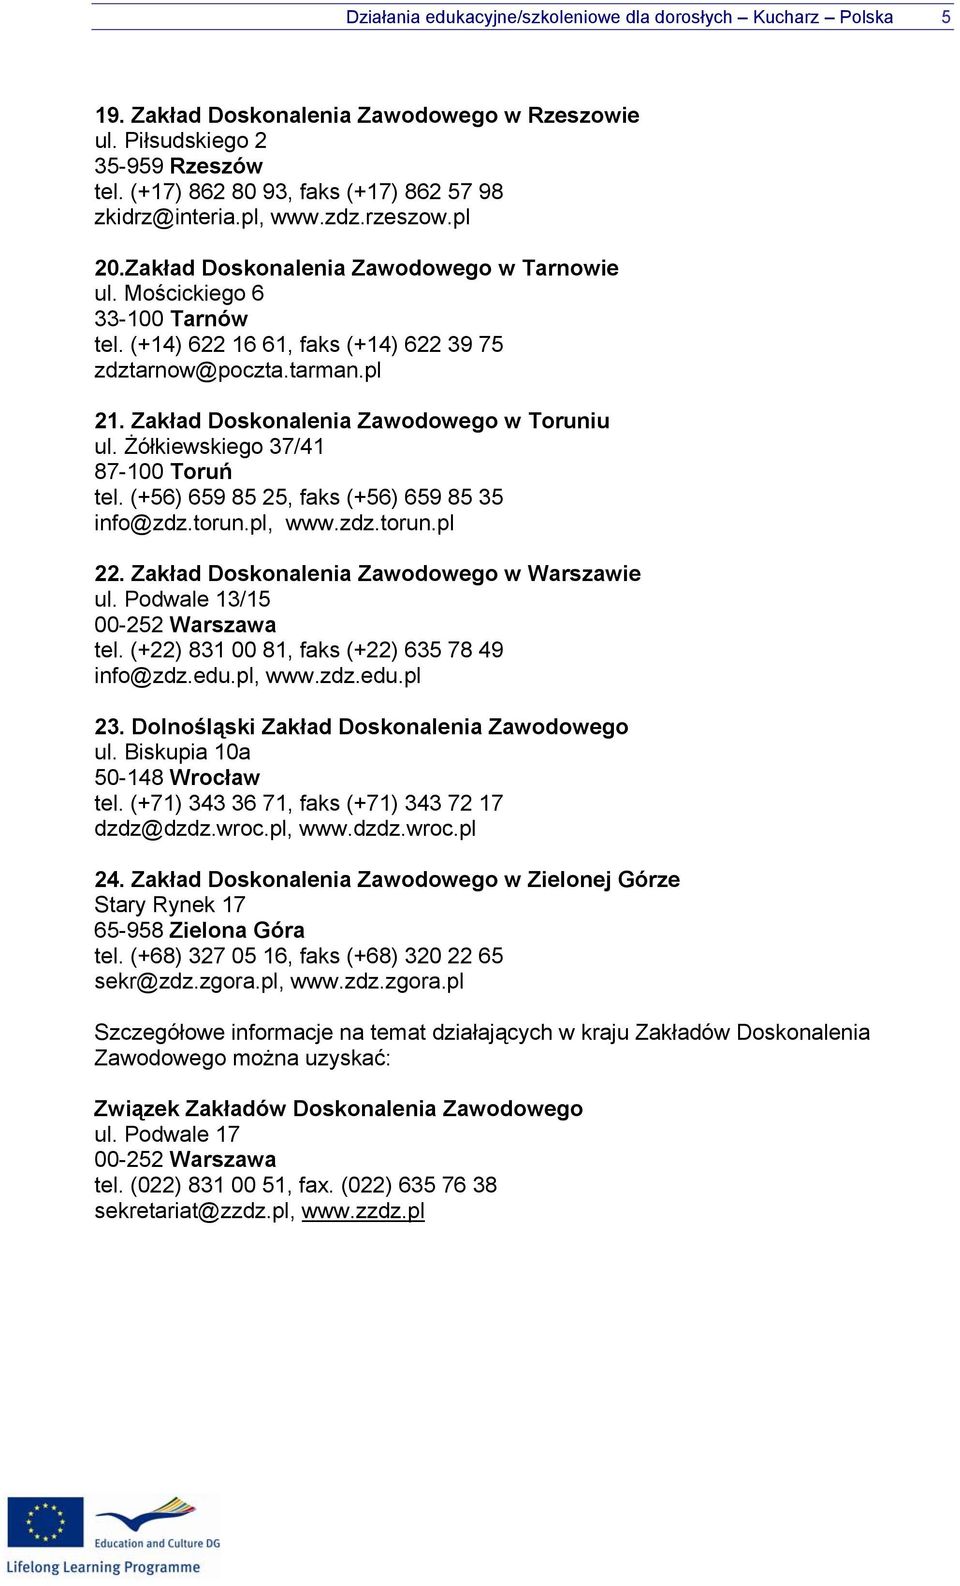 (+14) 622 16 61, faks (+14) 622 39 75 zdztarnow@poczta.tarman.pl 21. Zakład Doskonalenia Zawodowego w Toruniu ul. Żółkiewskiego 37/41 87-100 Toruń tel. (+56) 659 85 25, faks (+56) 659 85 35 info@zdz.